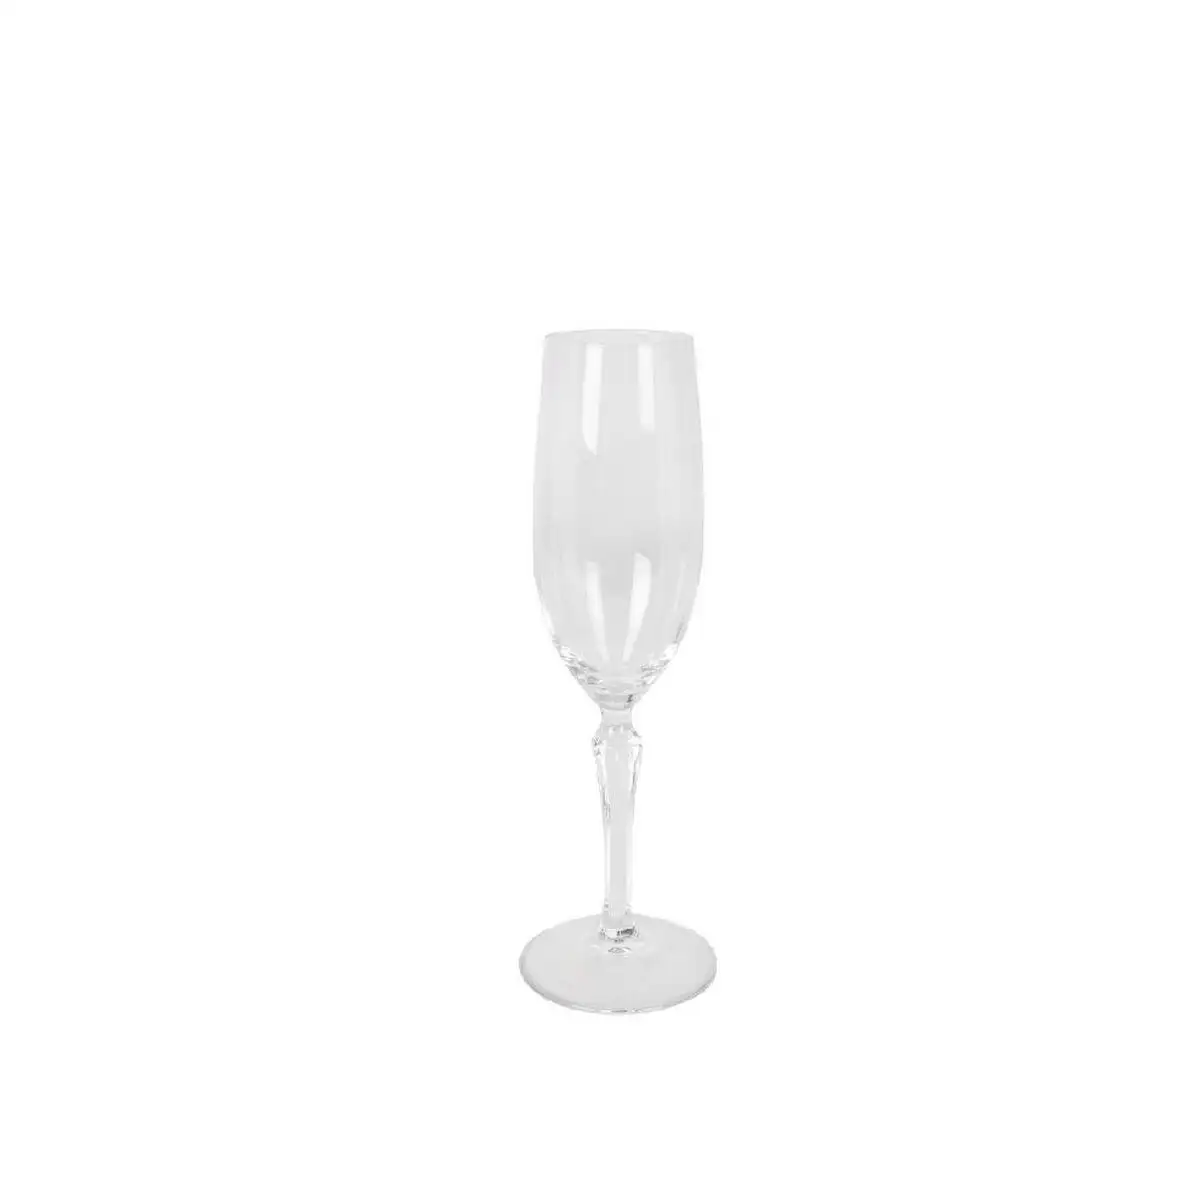 Set de verres royal leerdam gotica 210 ml champagne o 4 8 x 22 5 cm 6 unites_7061. Entrez dans l'Univers de DIAYTAR SENEGAL - Où la Tradition S'unit à la Modernité. Explorez notre sélection pour trouver des produits qui allient héritage et innovation.